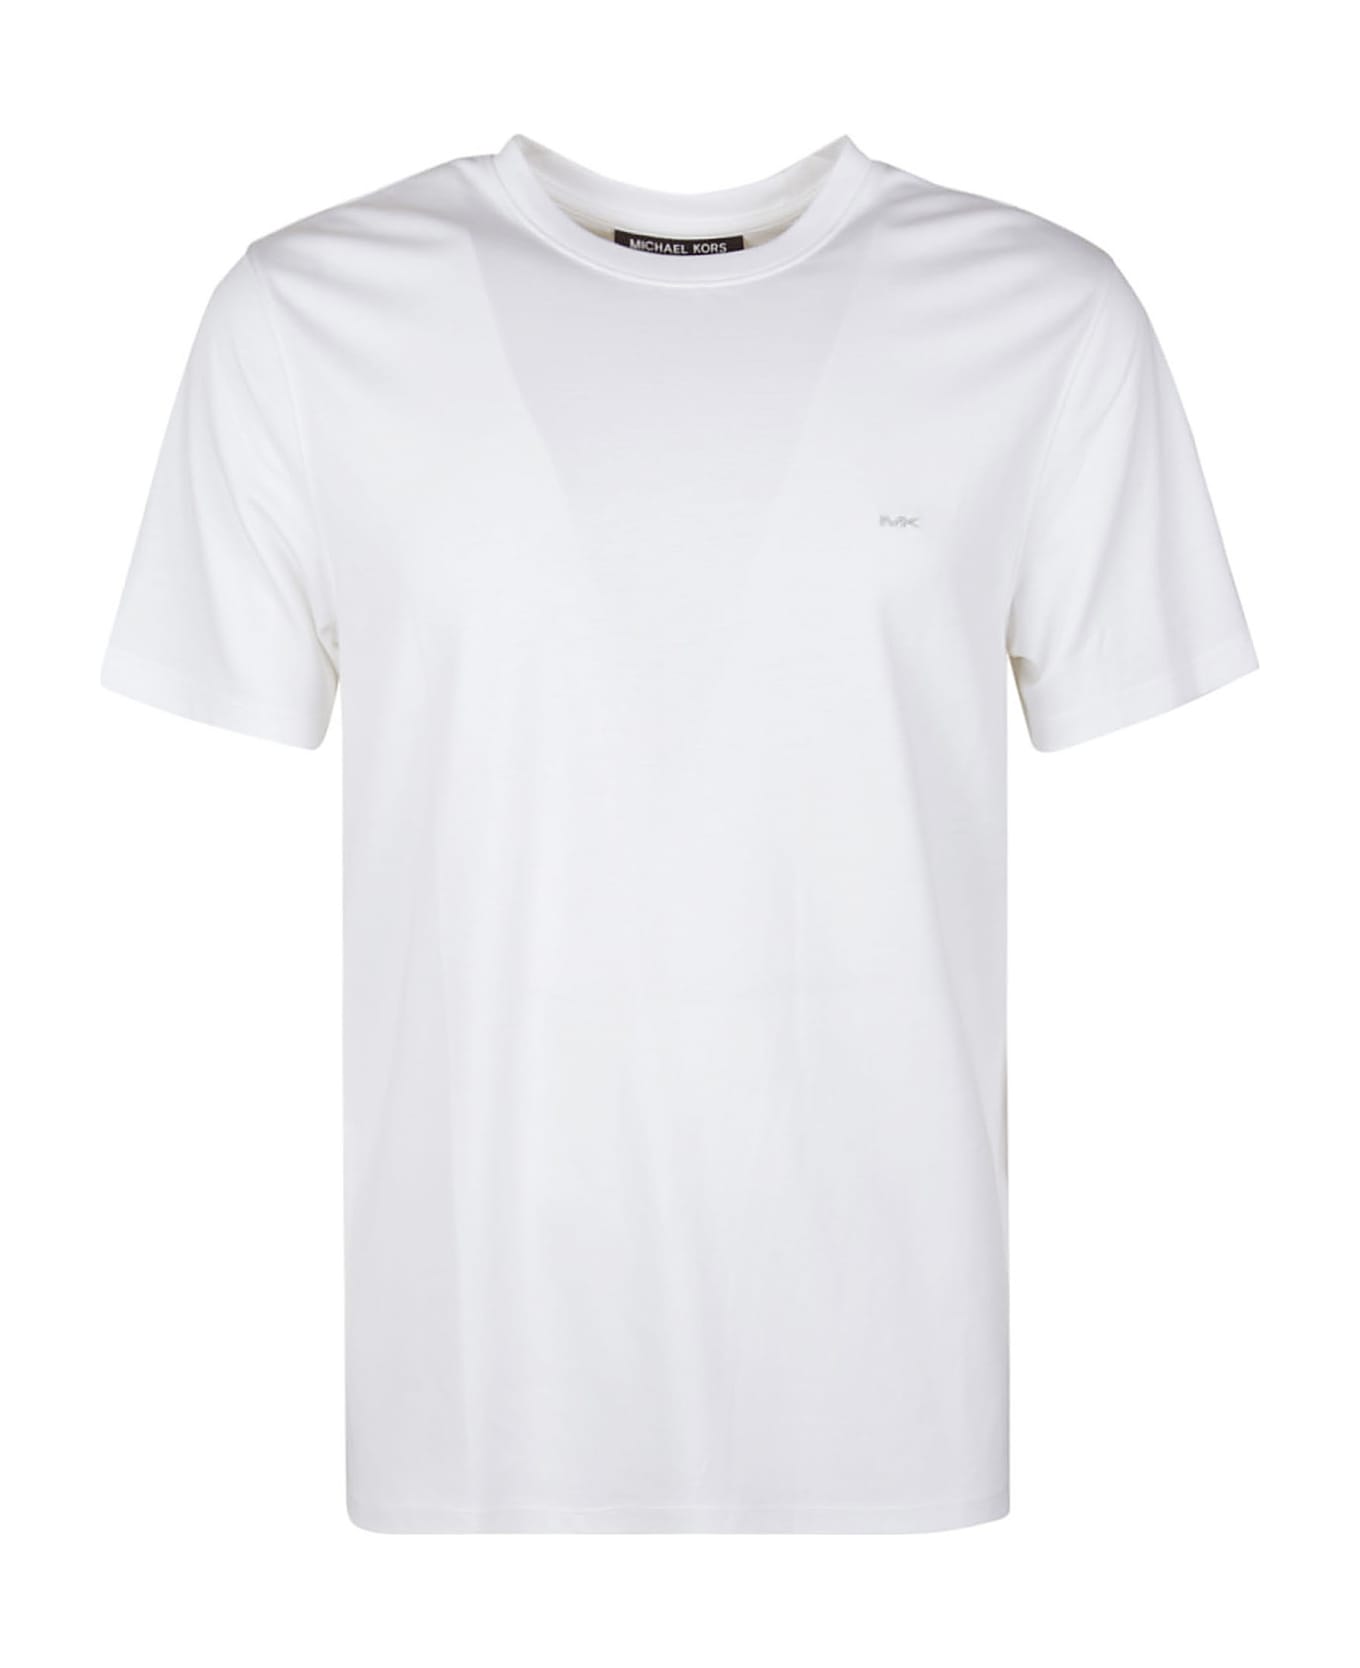 Michael Kors Round Neck T-shirt - White シャツ